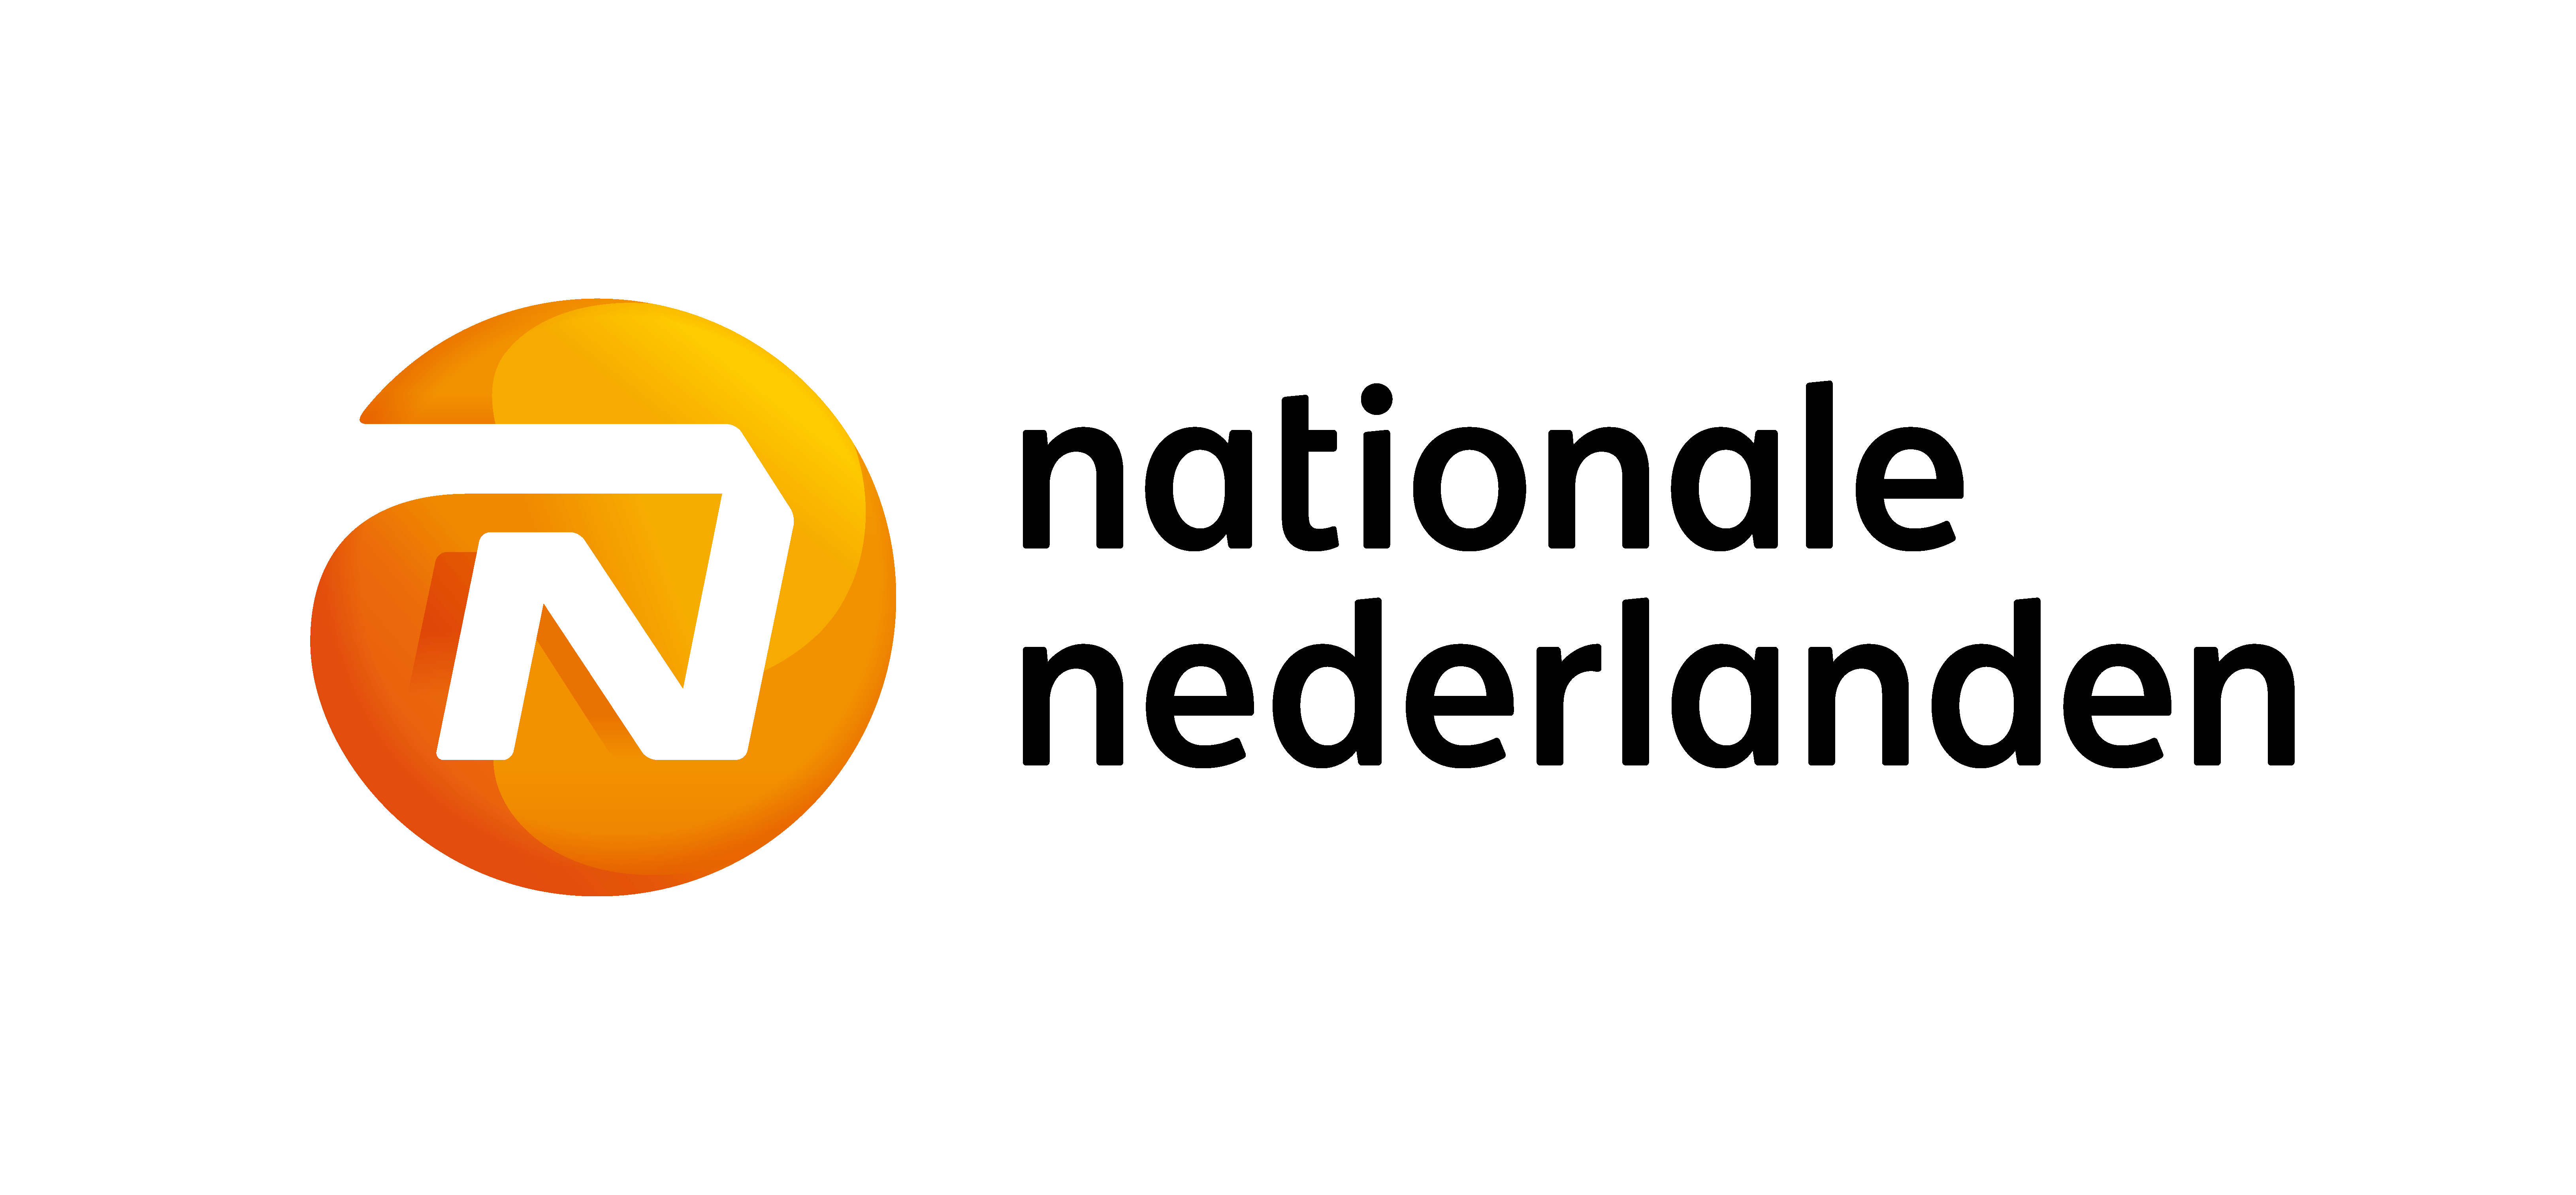 NN_Nat Ned_v1 2_logo_01_rgb_fc_2400altaresolución